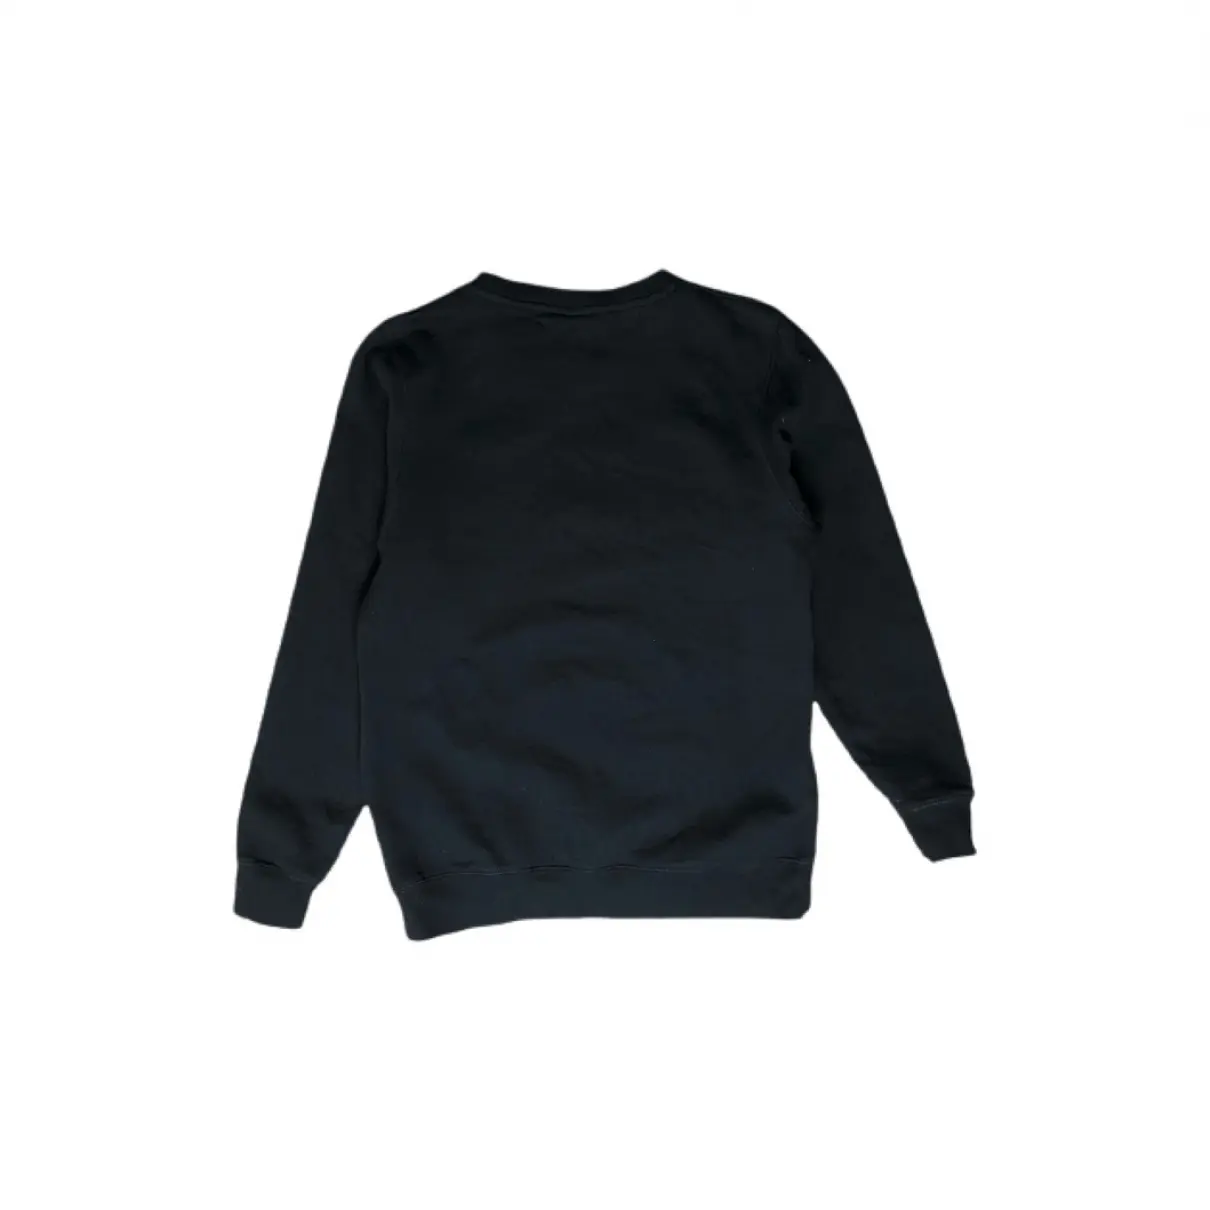 Buy Stussy Sweatshirt online - Vintage